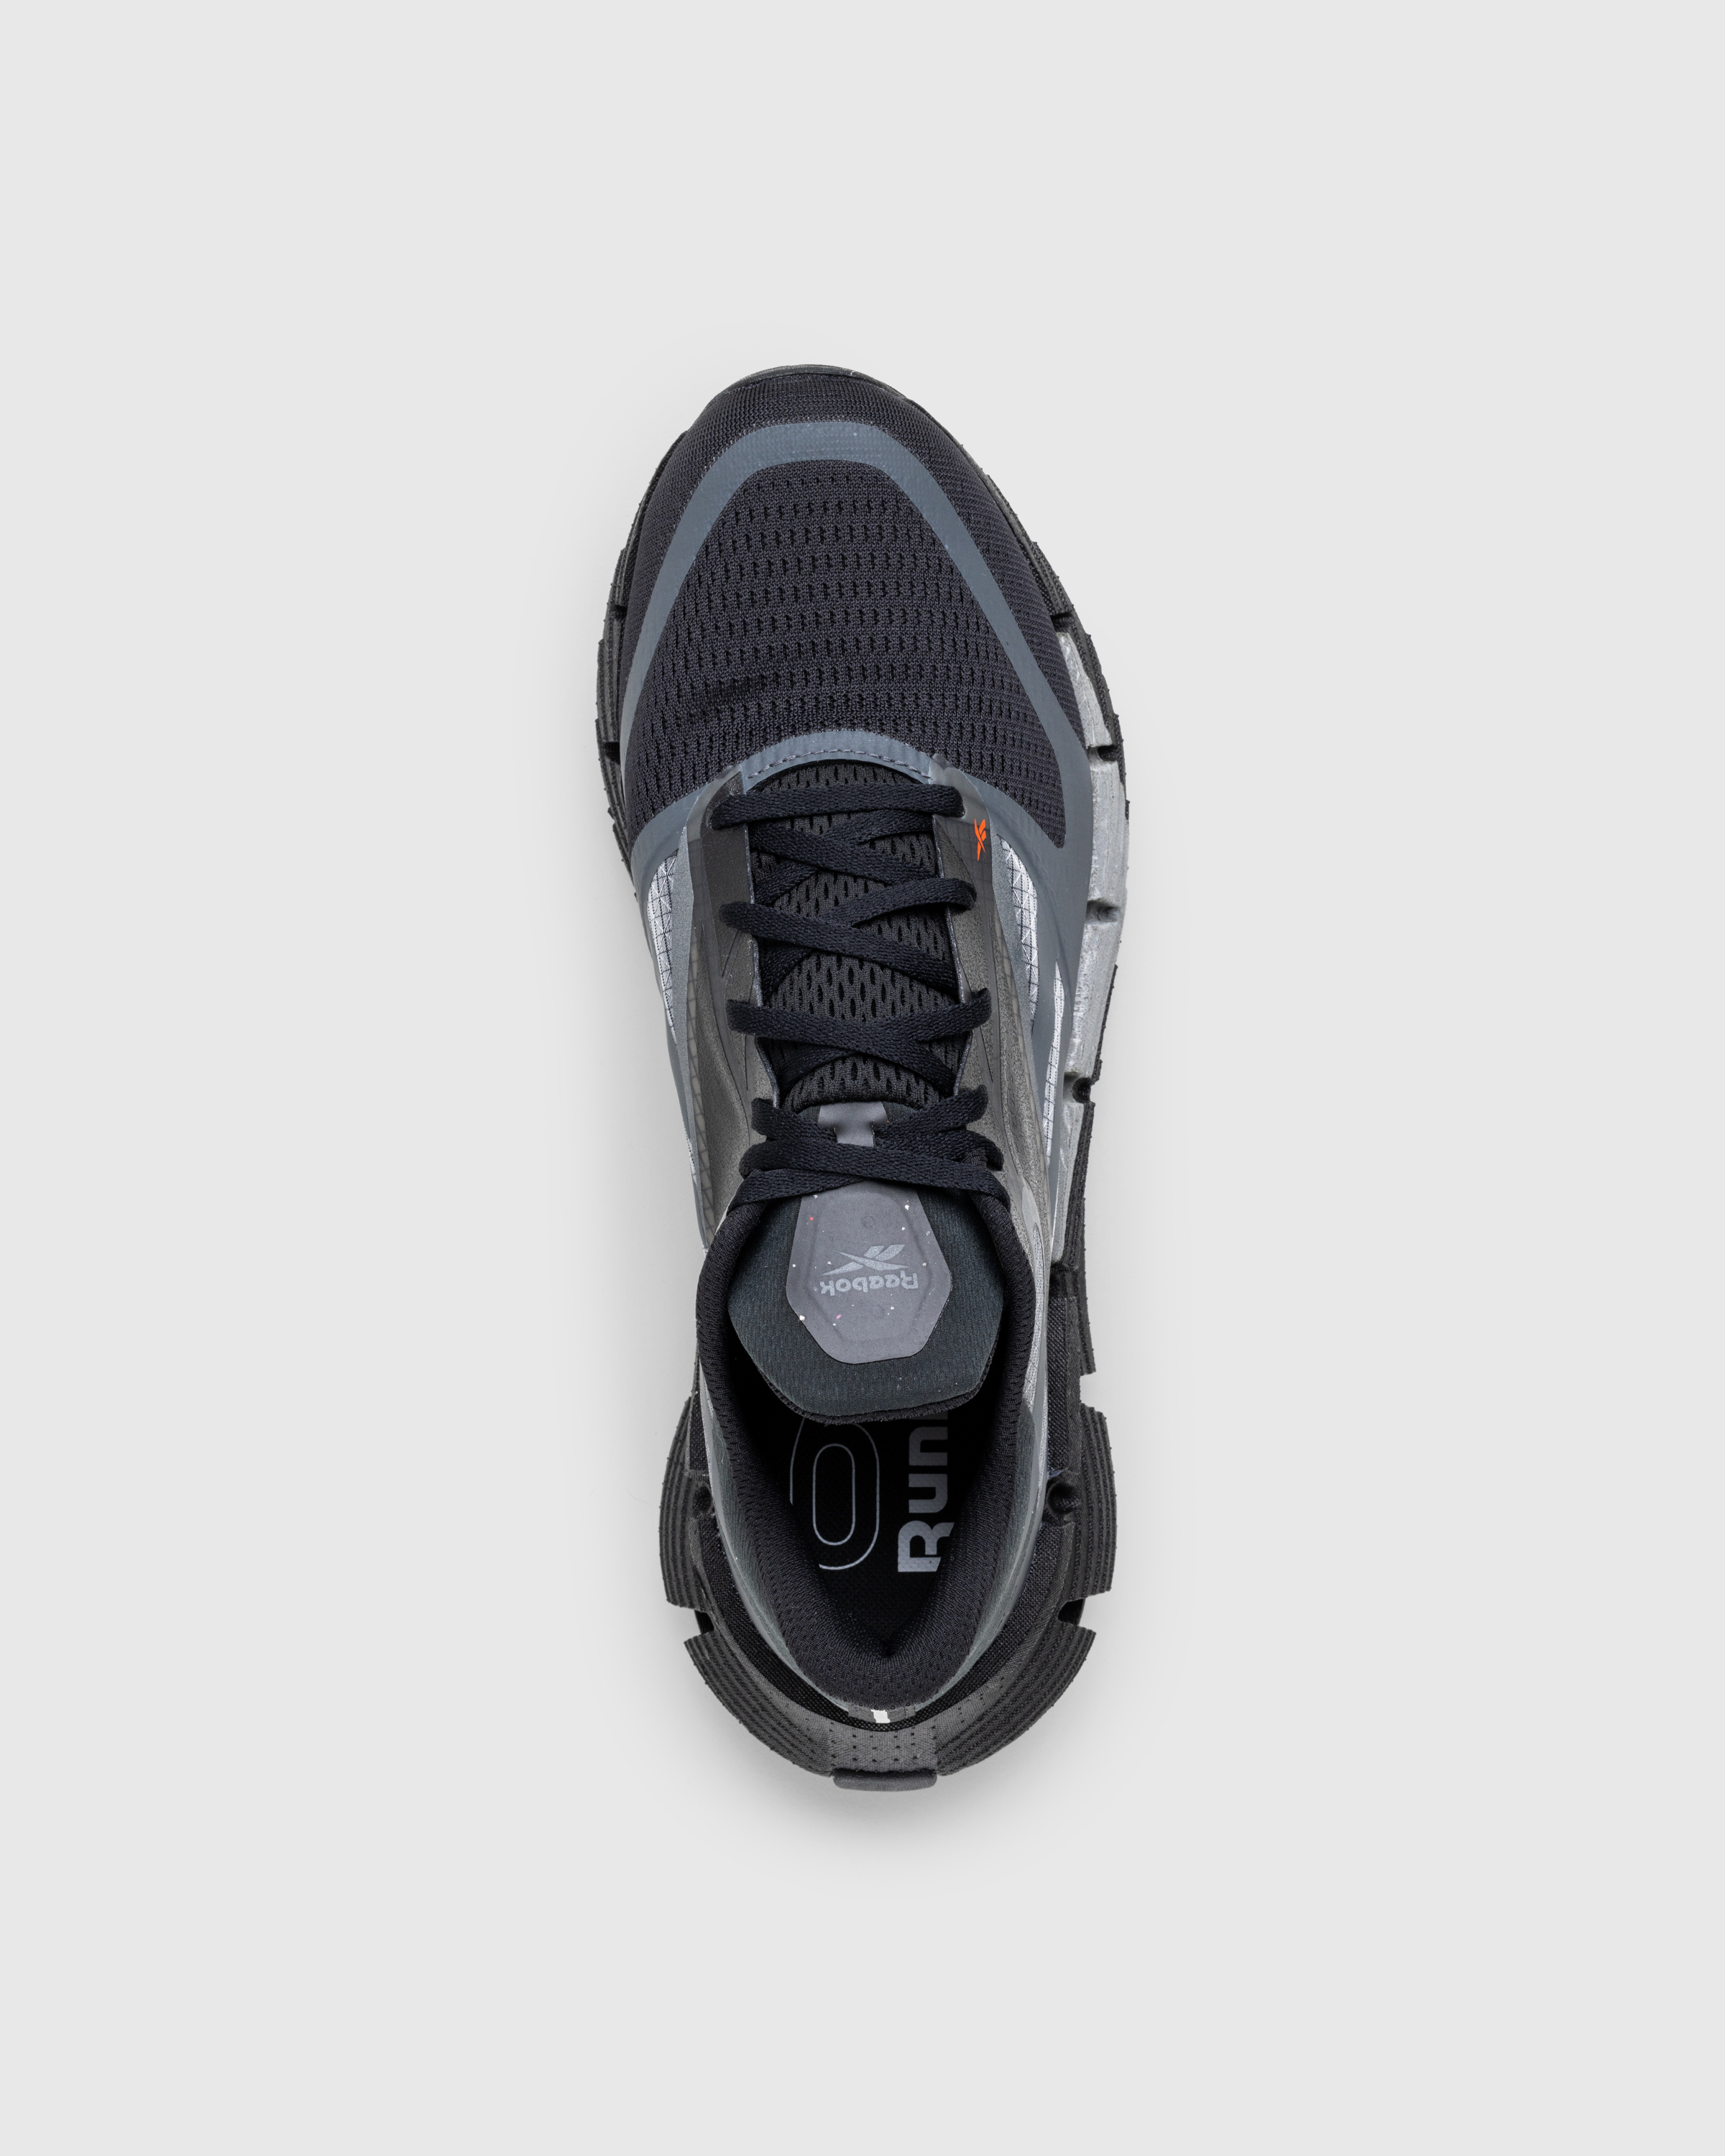 Reebok – FloatZig Black - Low Top Sneakers - Black - Image 5